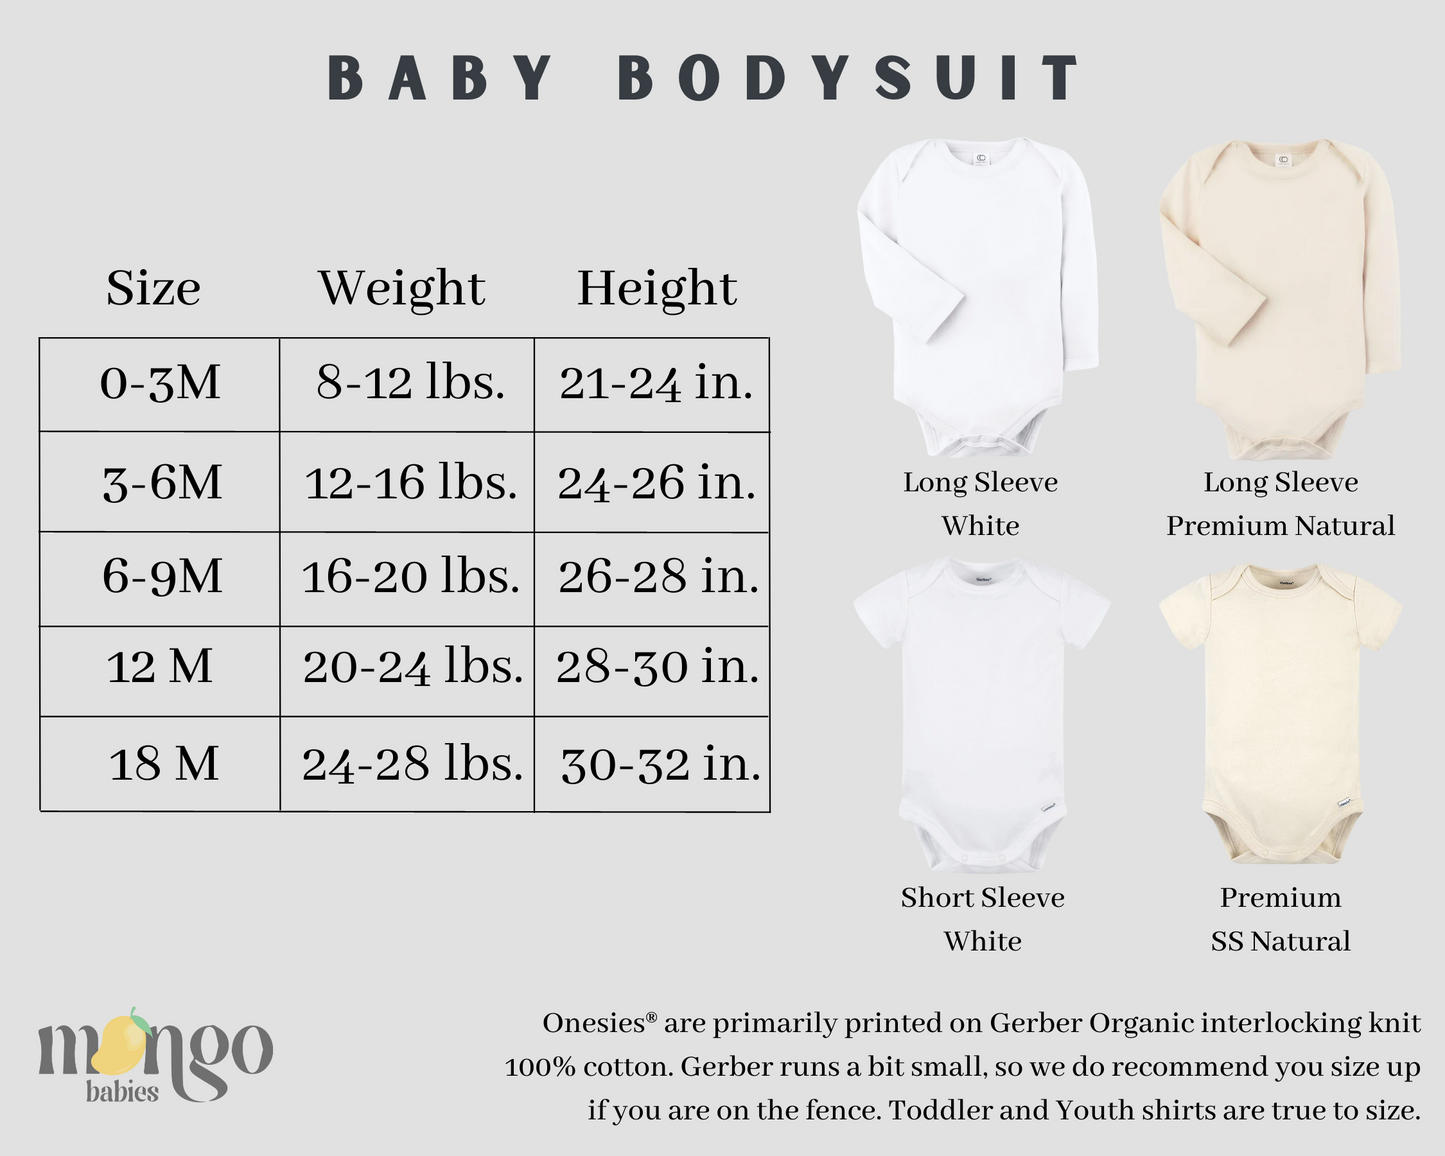 Children Clothing Baby Onesie® Read More Books Bodysuit Baby Shower Gift Newborn